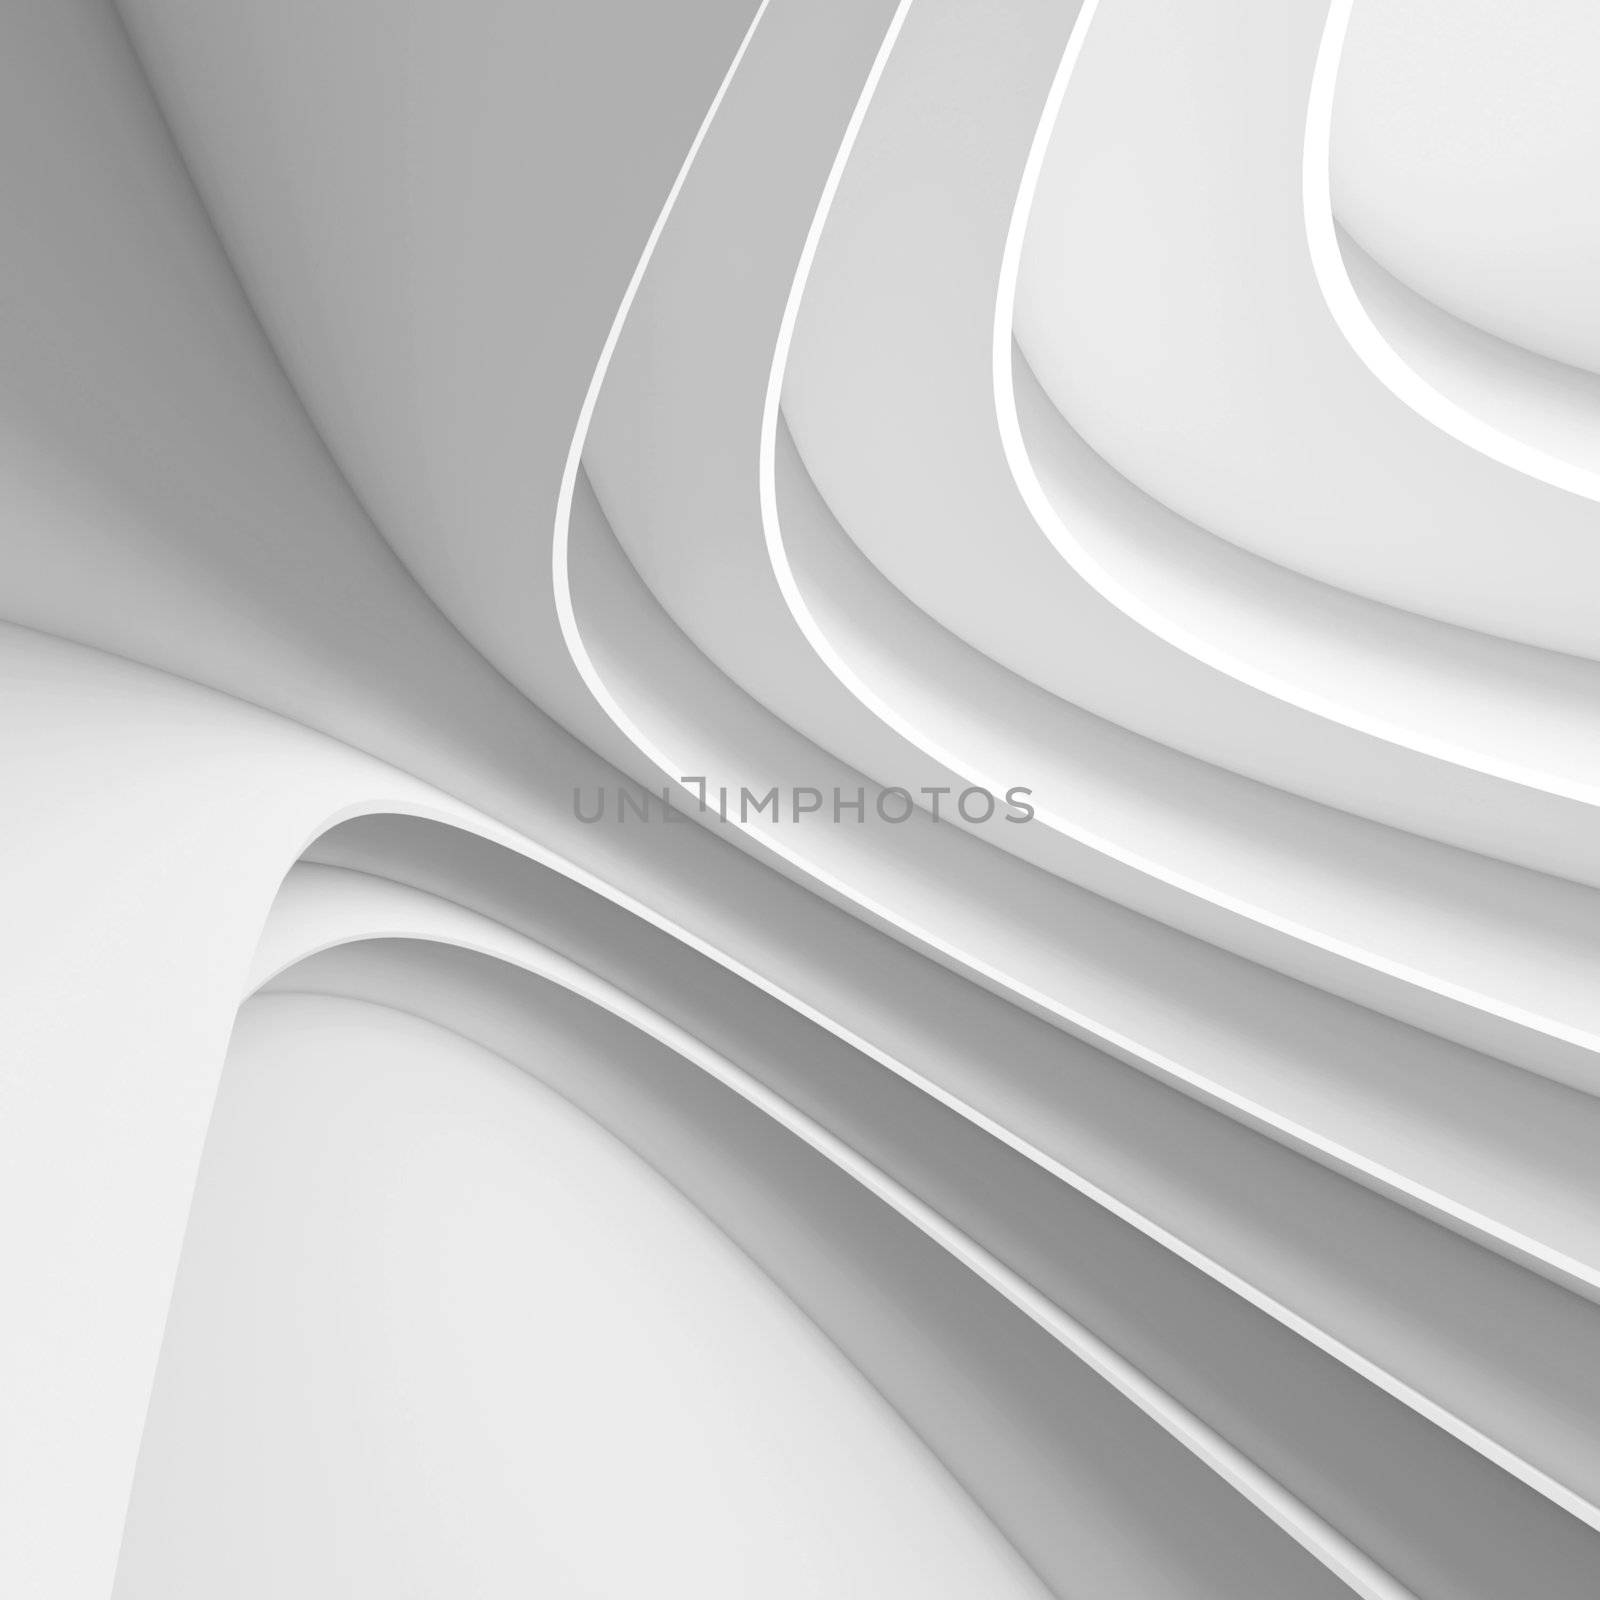 3d Illustration of White Futuristic Architecture Design